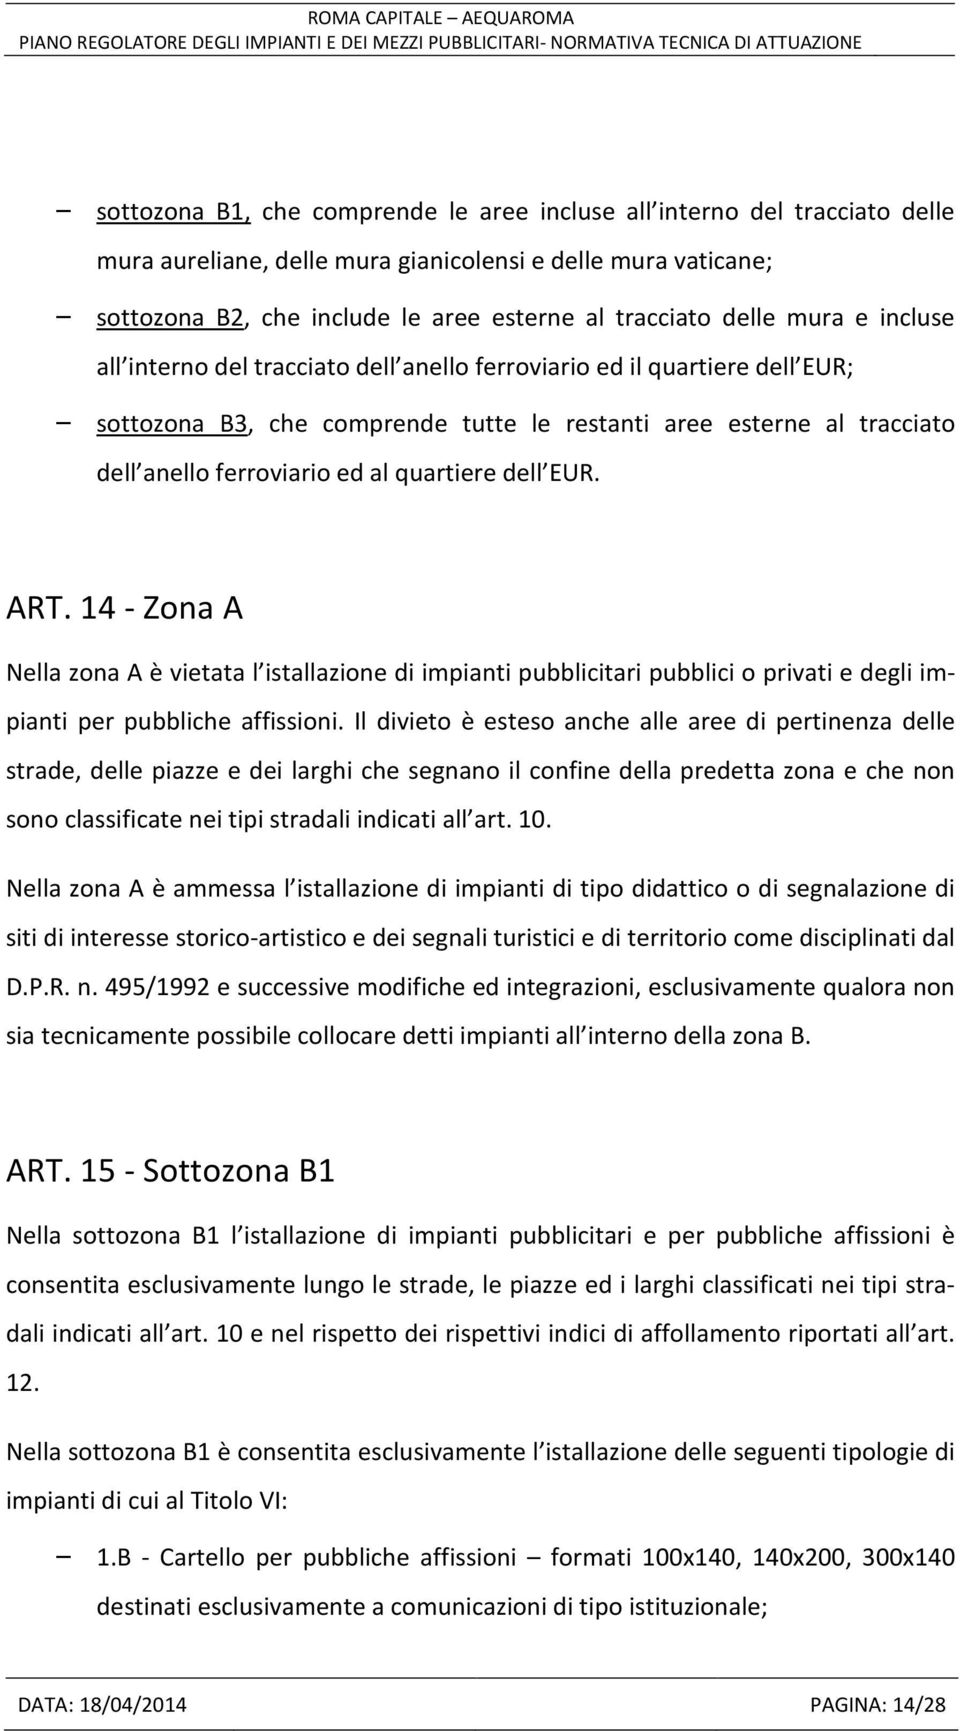 quartiere dell EUR. ART. 14 - Zona A Nella zona A è vietata l istallazione di impianti pubblicitari pubblici o privati e degli impianti per pubbliche affissioni.